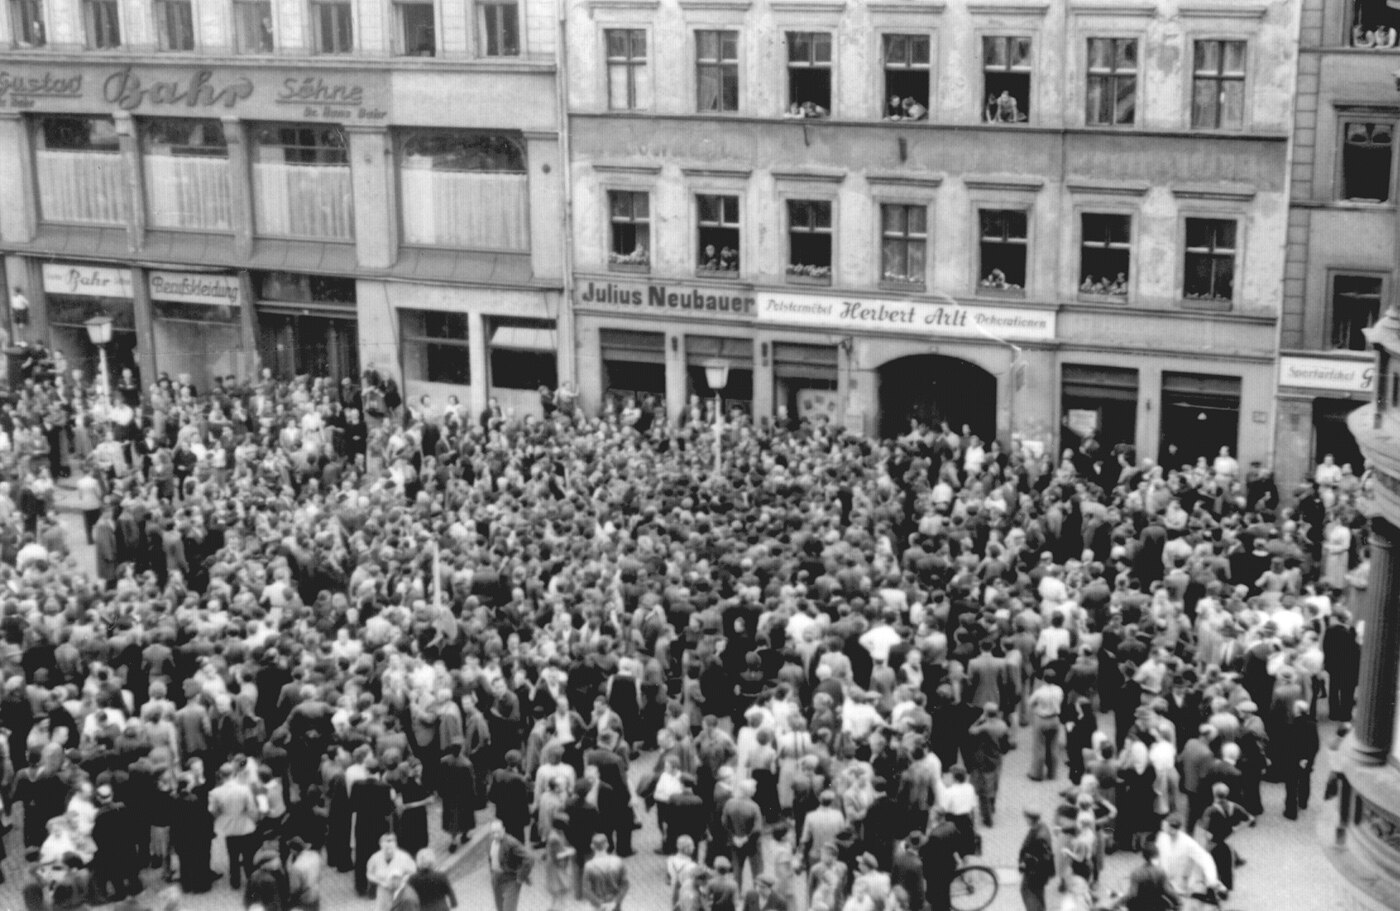 Eine Aufnahme von 1953 zeigt eine versammelte Menschenmenge auf dem Obermarkt in Görlitz.